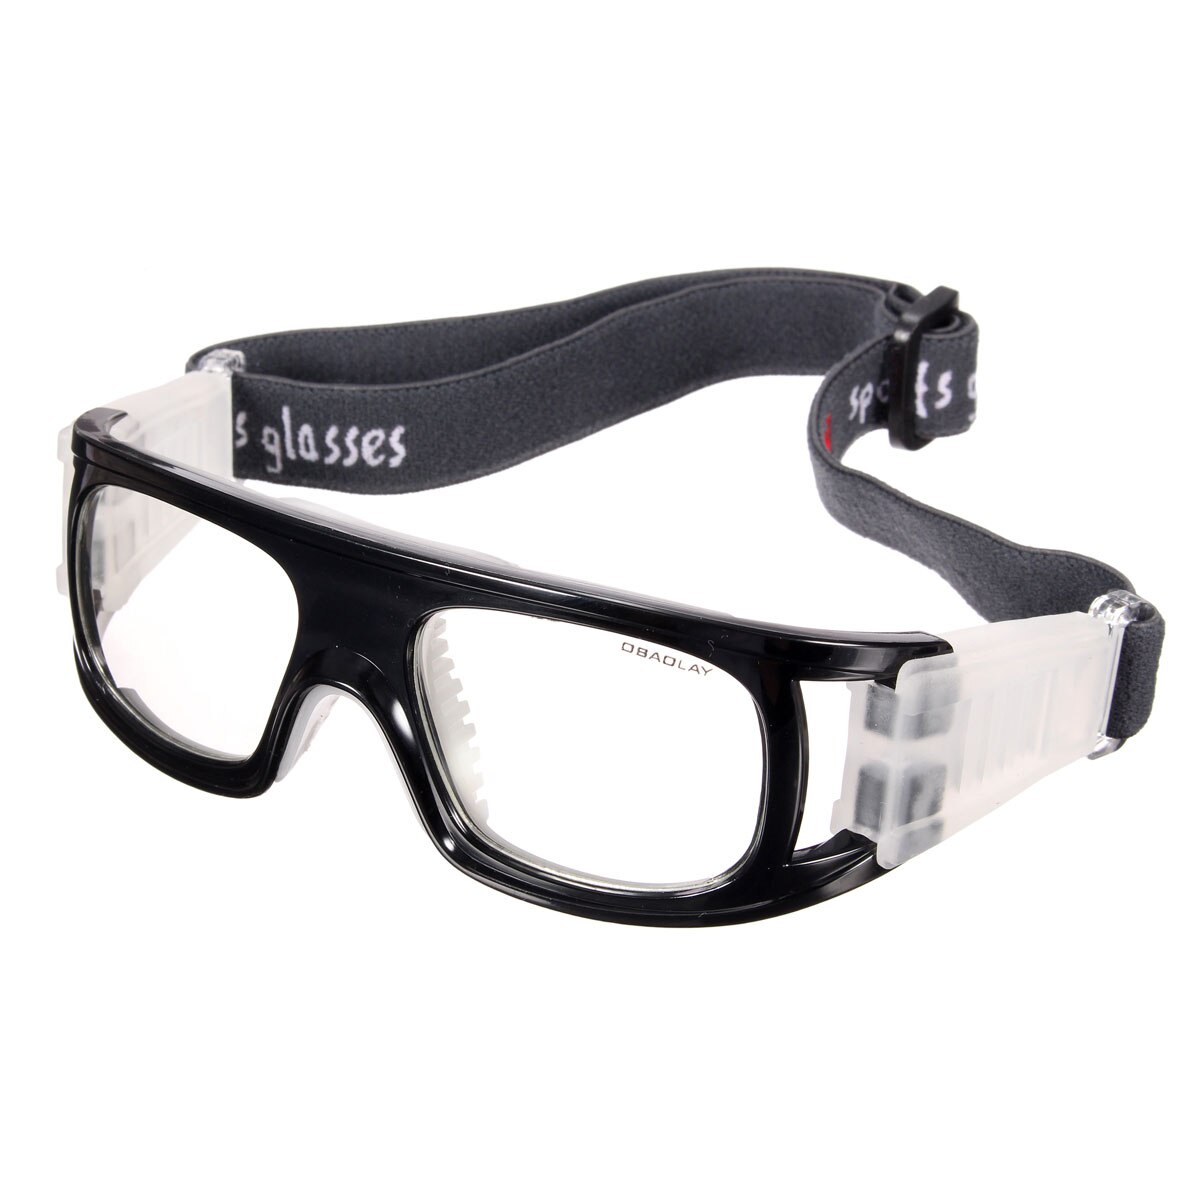 Basketball fodbold fodbold sport beskyttelsesbriller elastiske cykelbriller udendørs sport sikkerhedsbriller 4 farver: Sort